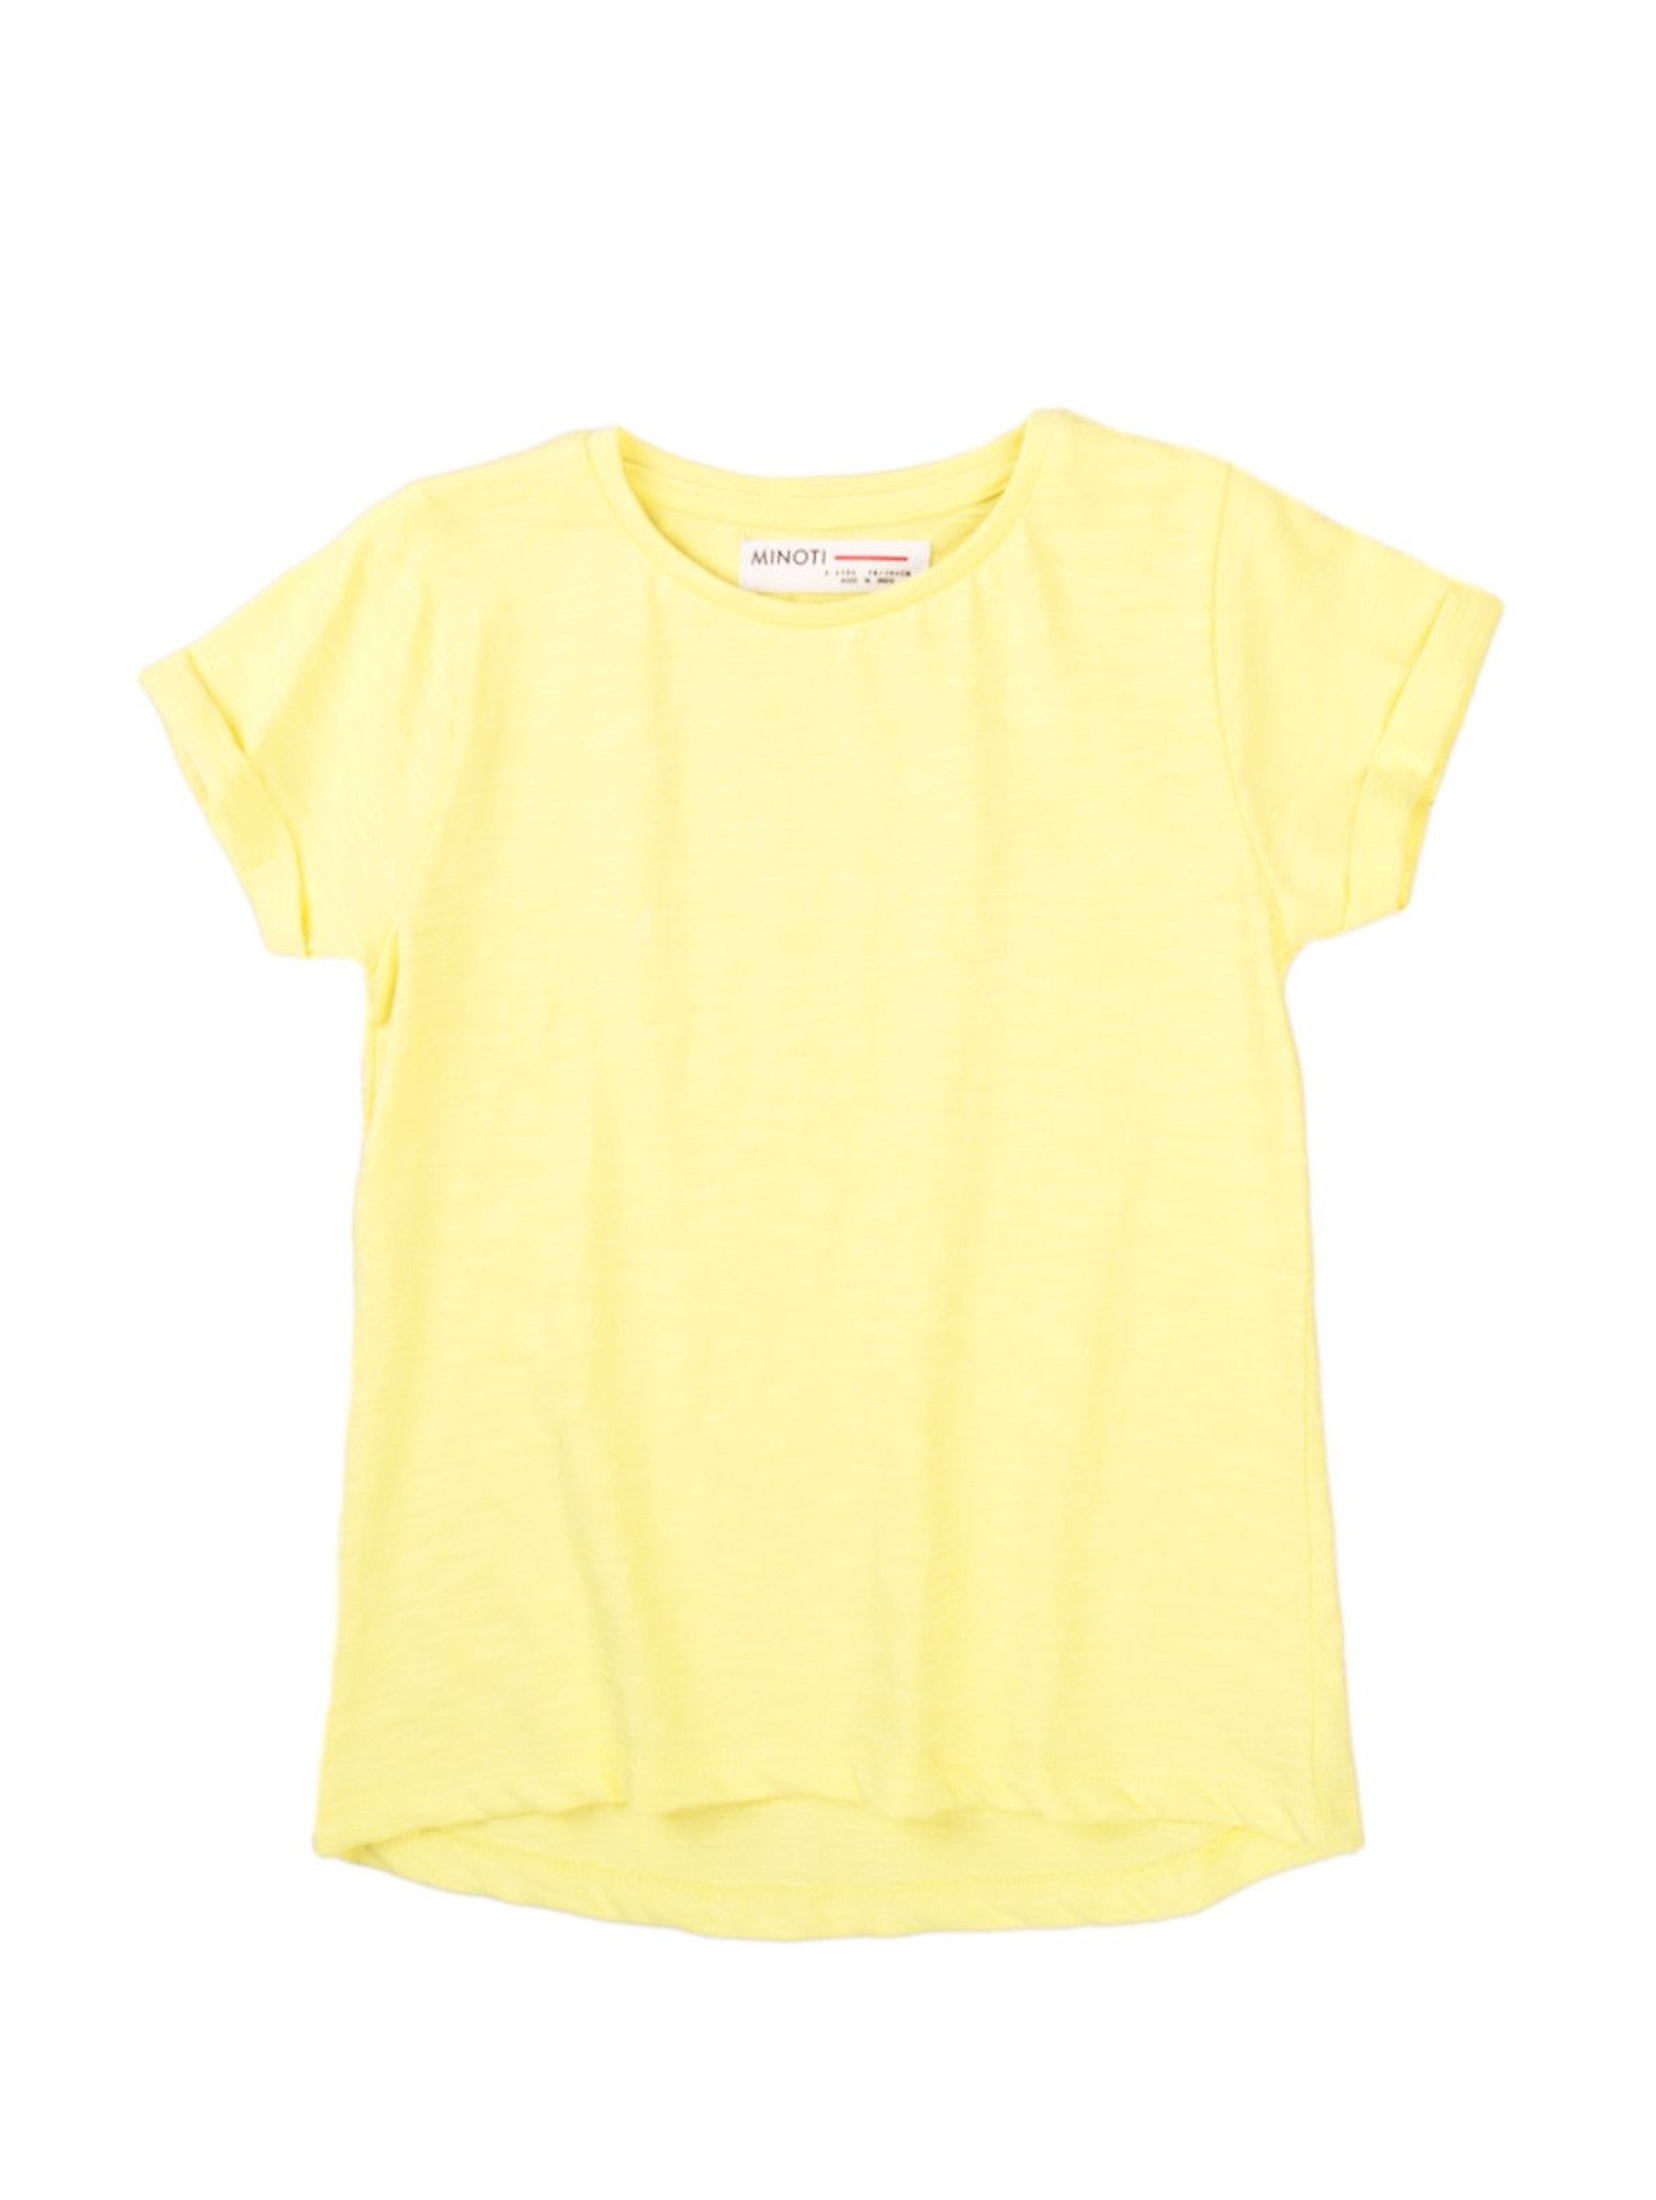 T-shirt dziewczęcy klasyczny żółty